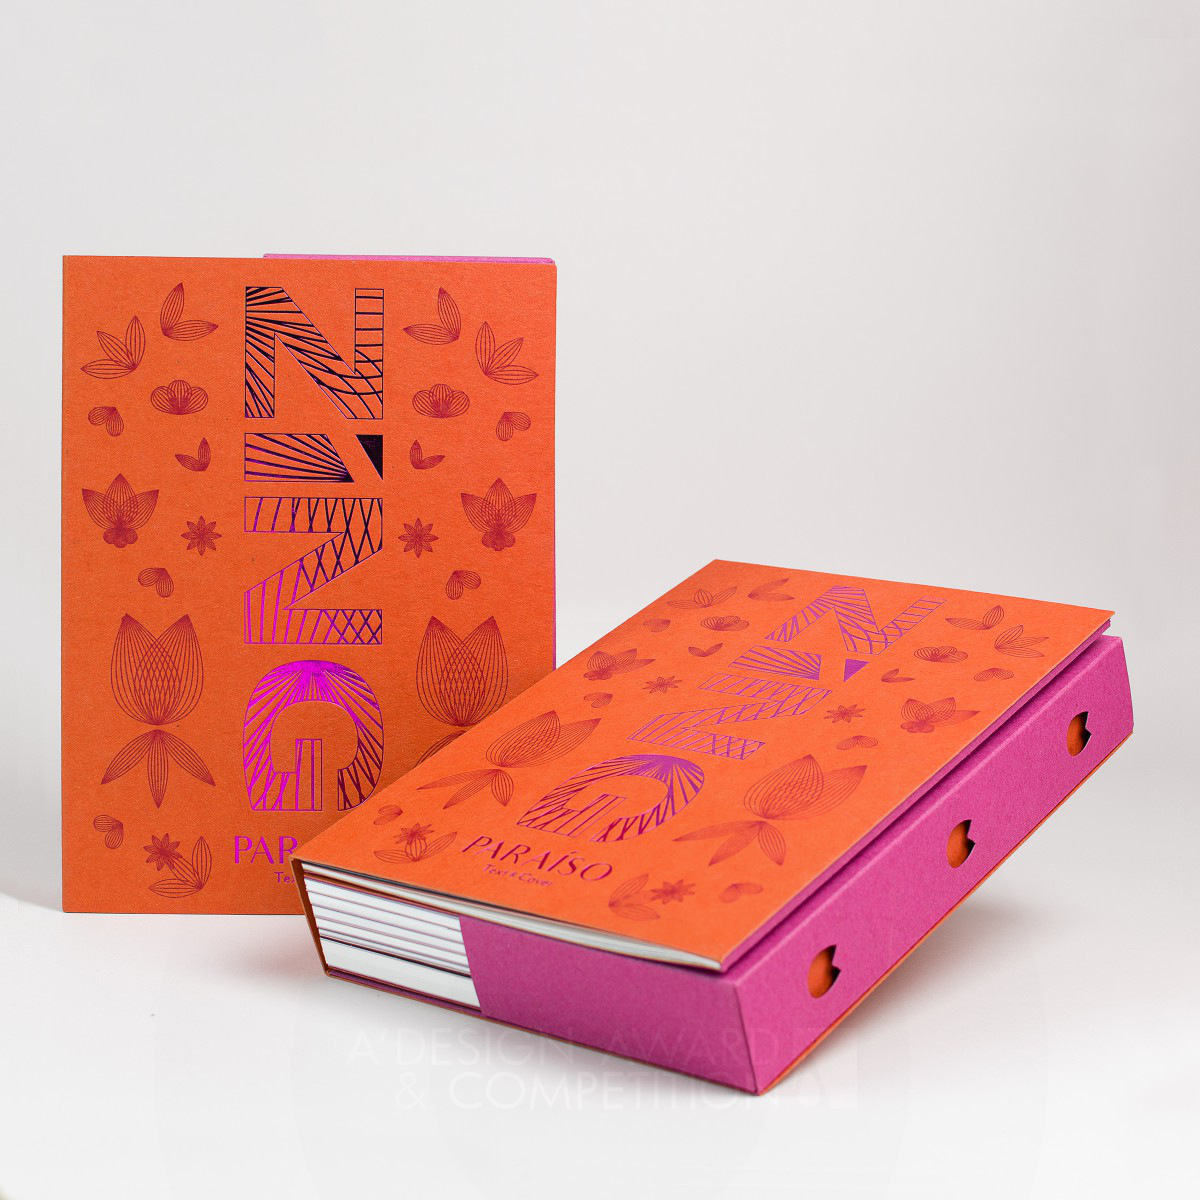 Paraiso Paper Swatch Book by Izabela Jurczyk